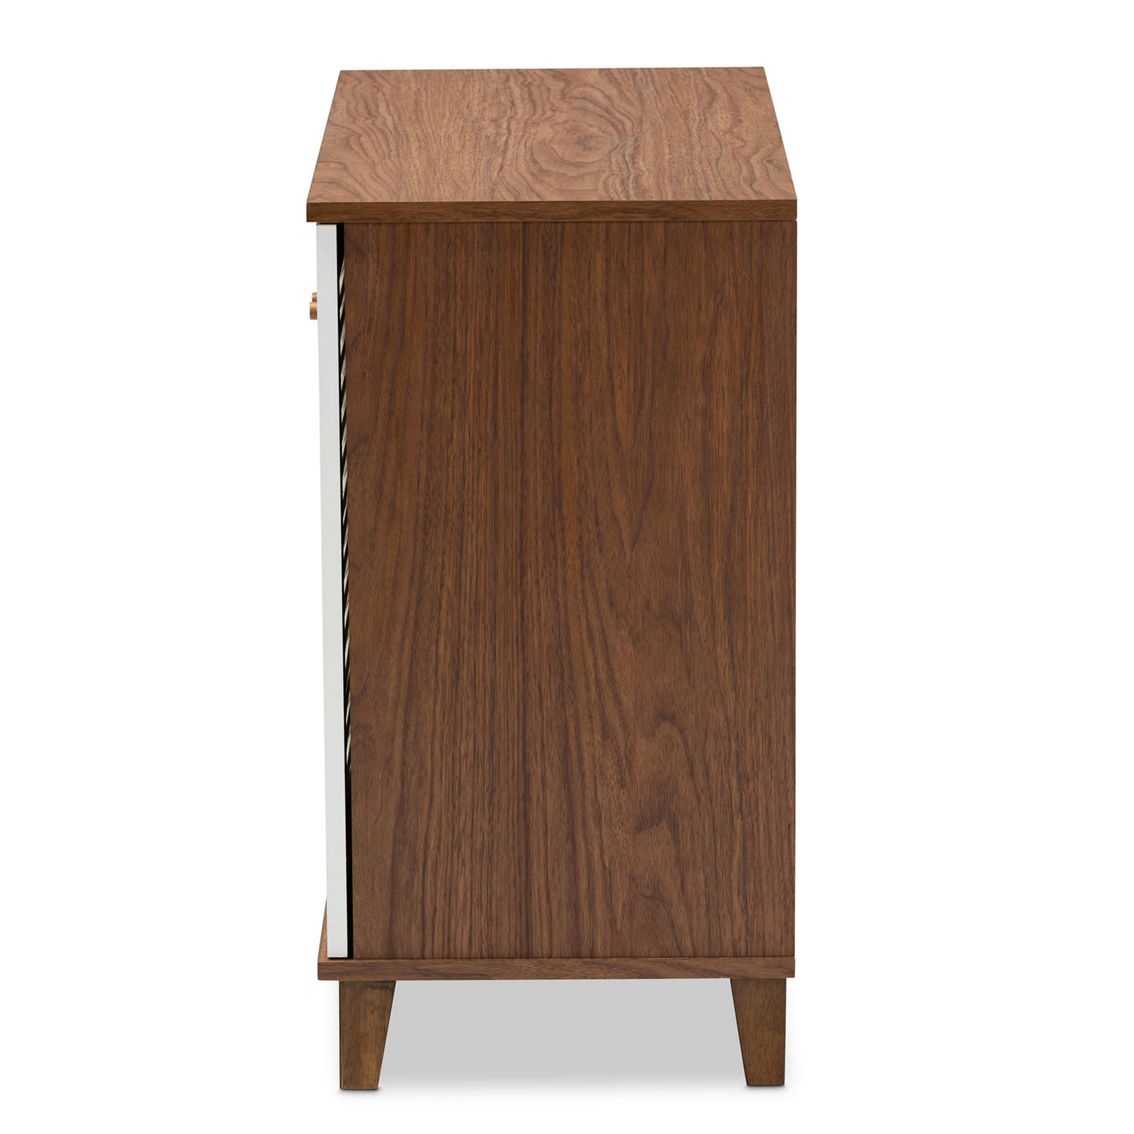 Baxton Studio Coolidge White and Walnut Finished 4-Shelf Wood Shoe Storage Cabinet - Image 4 of 5